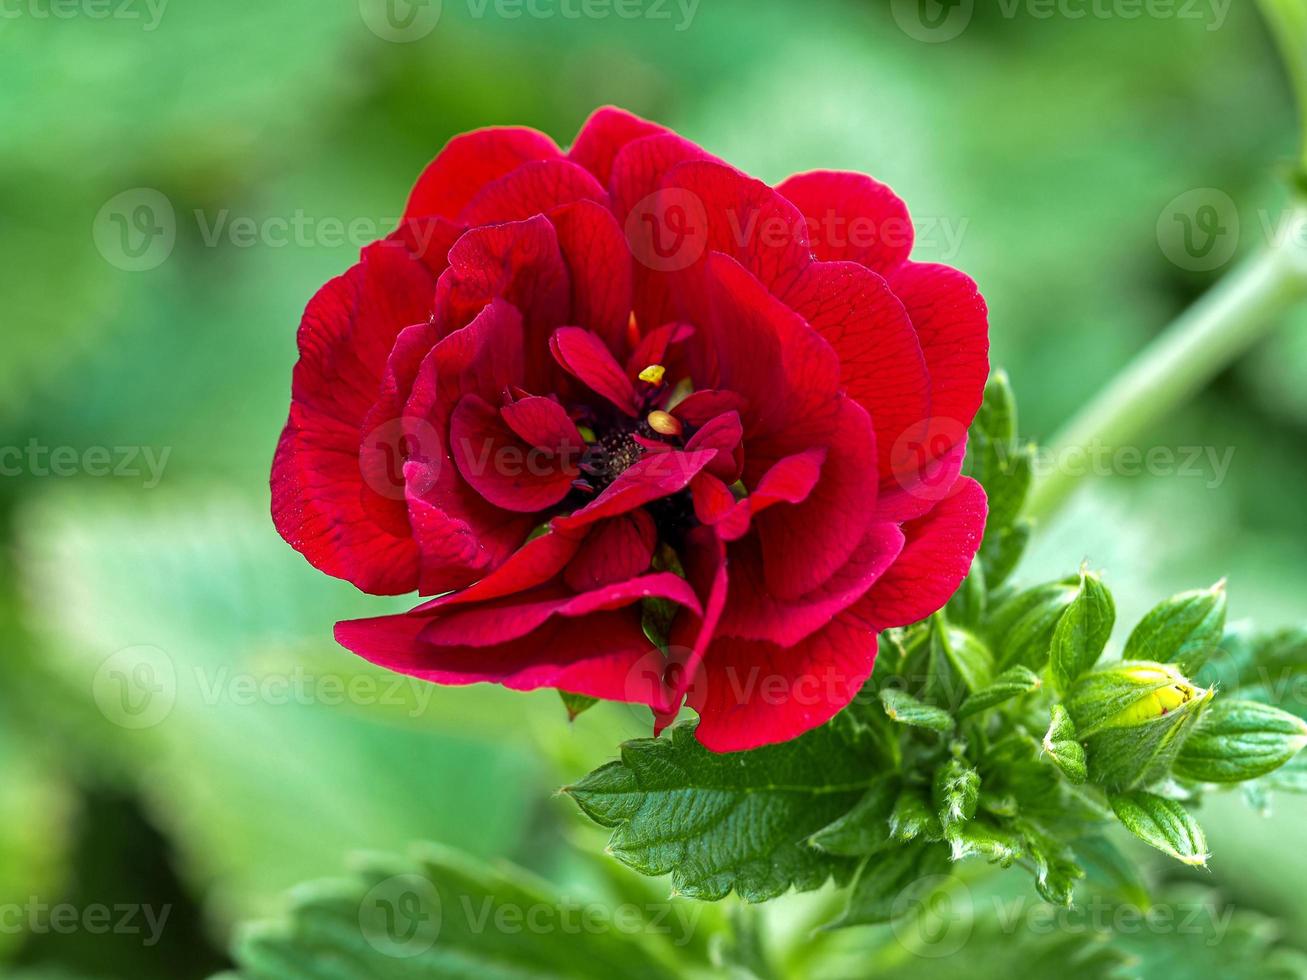 linda flor vermelha potentilla flamenca em um jardim foto